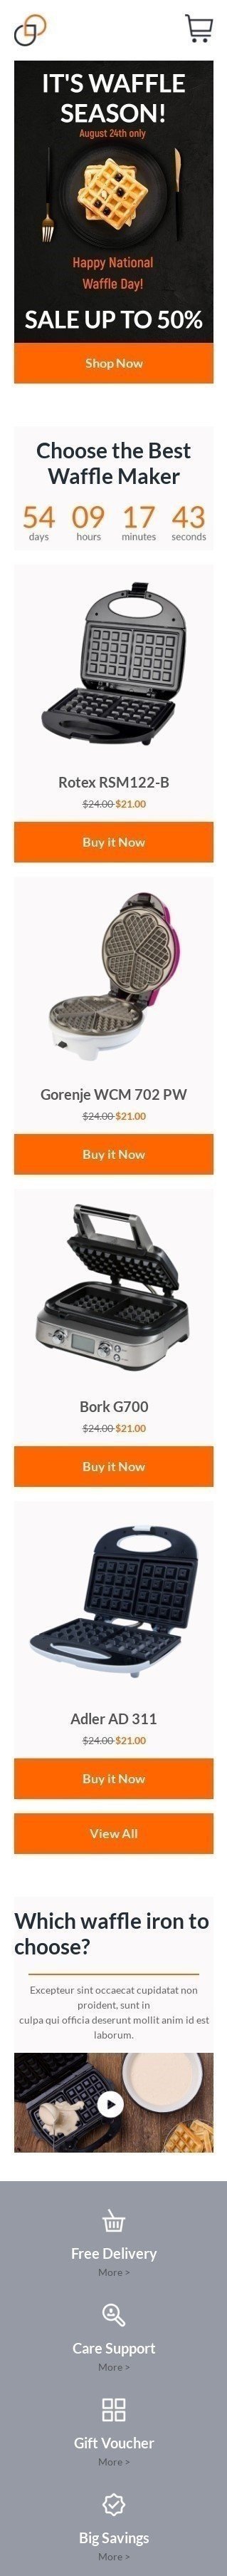 Modello Email Giornata nazionale della cialda «La migliore macchina per waffle» per il settore industriale di Gadget Visualizzazione mobile